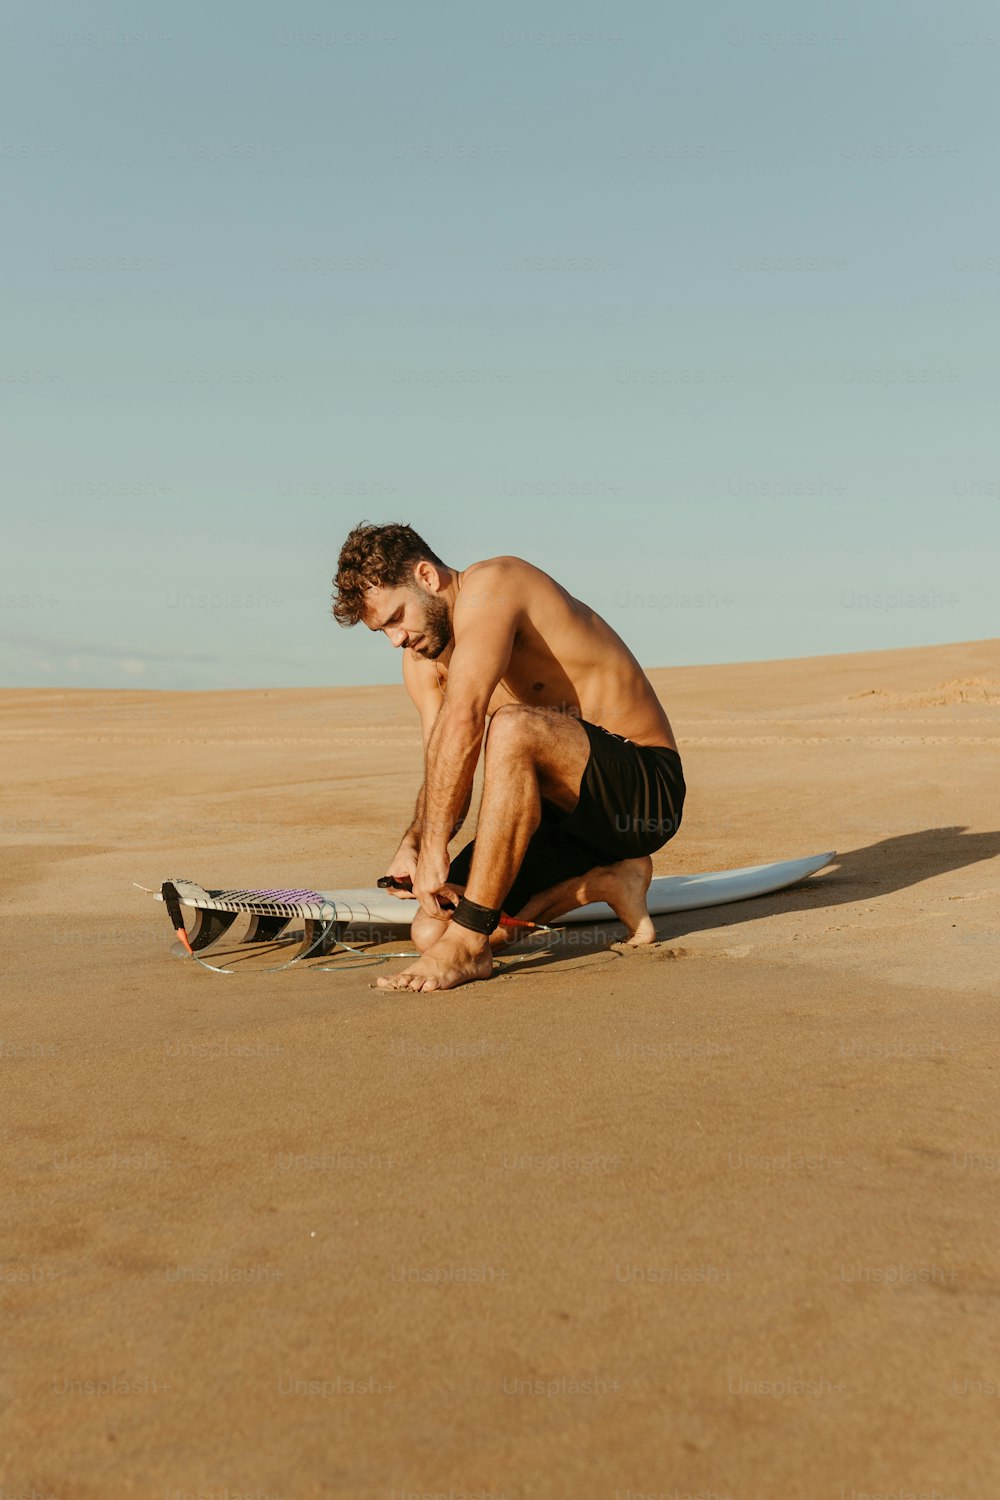 um homem ajoelhado em uma praia ao lado de uma prancha de surfe